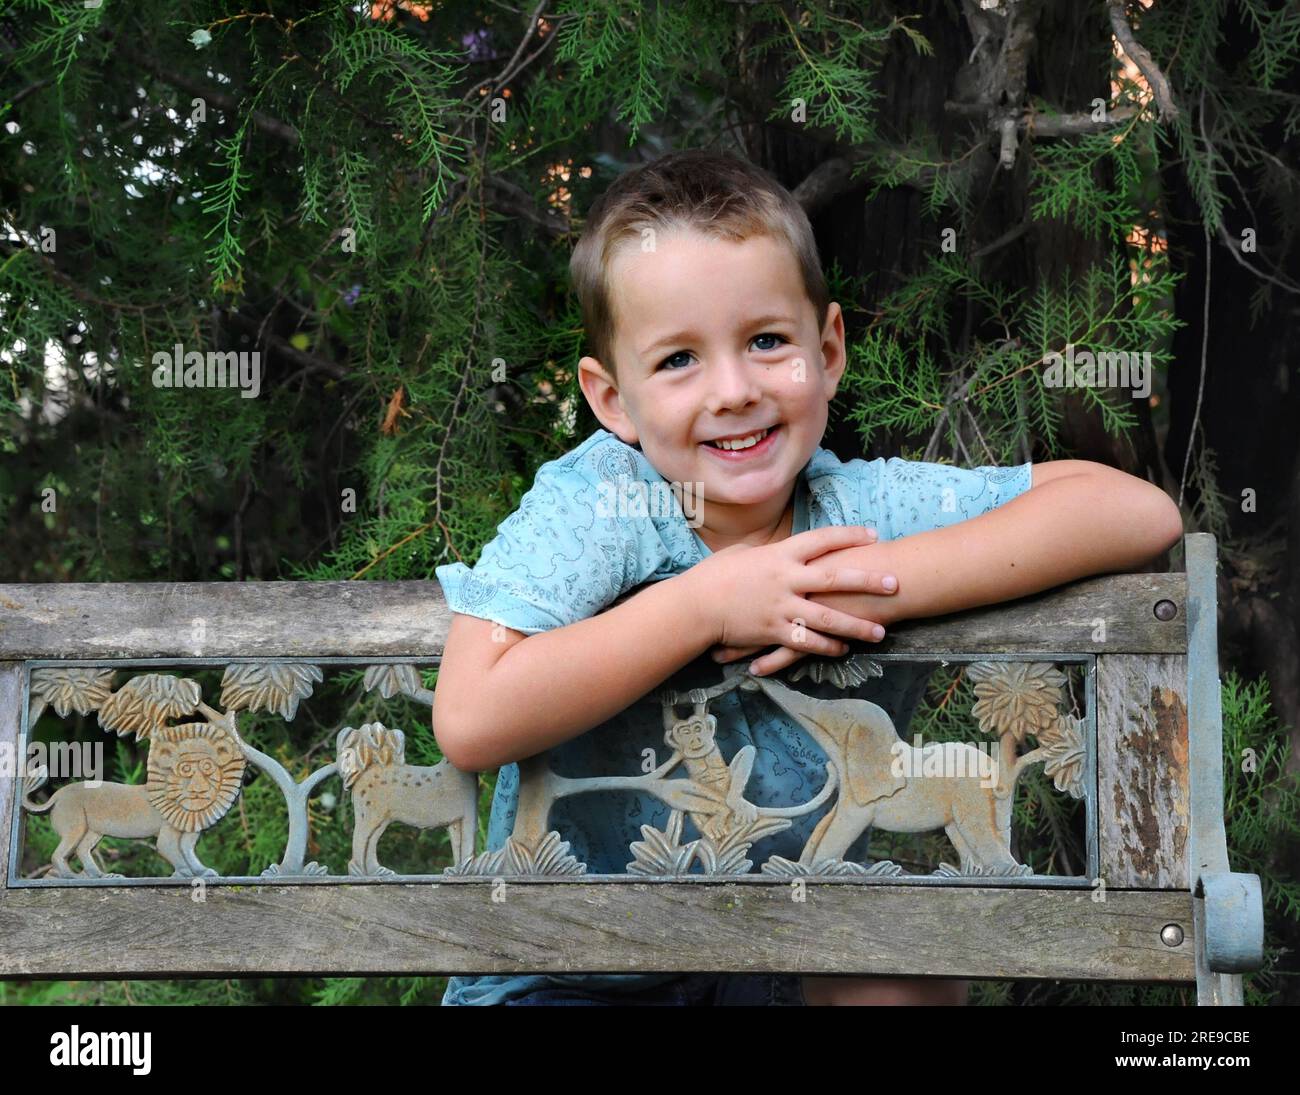 Der kleine Junge lehnt sich über eine Holzbank und grinst. Er trägt ein blaues Hemd und ist von immergrünen Gliedmaßen umgeben. Stockfoto